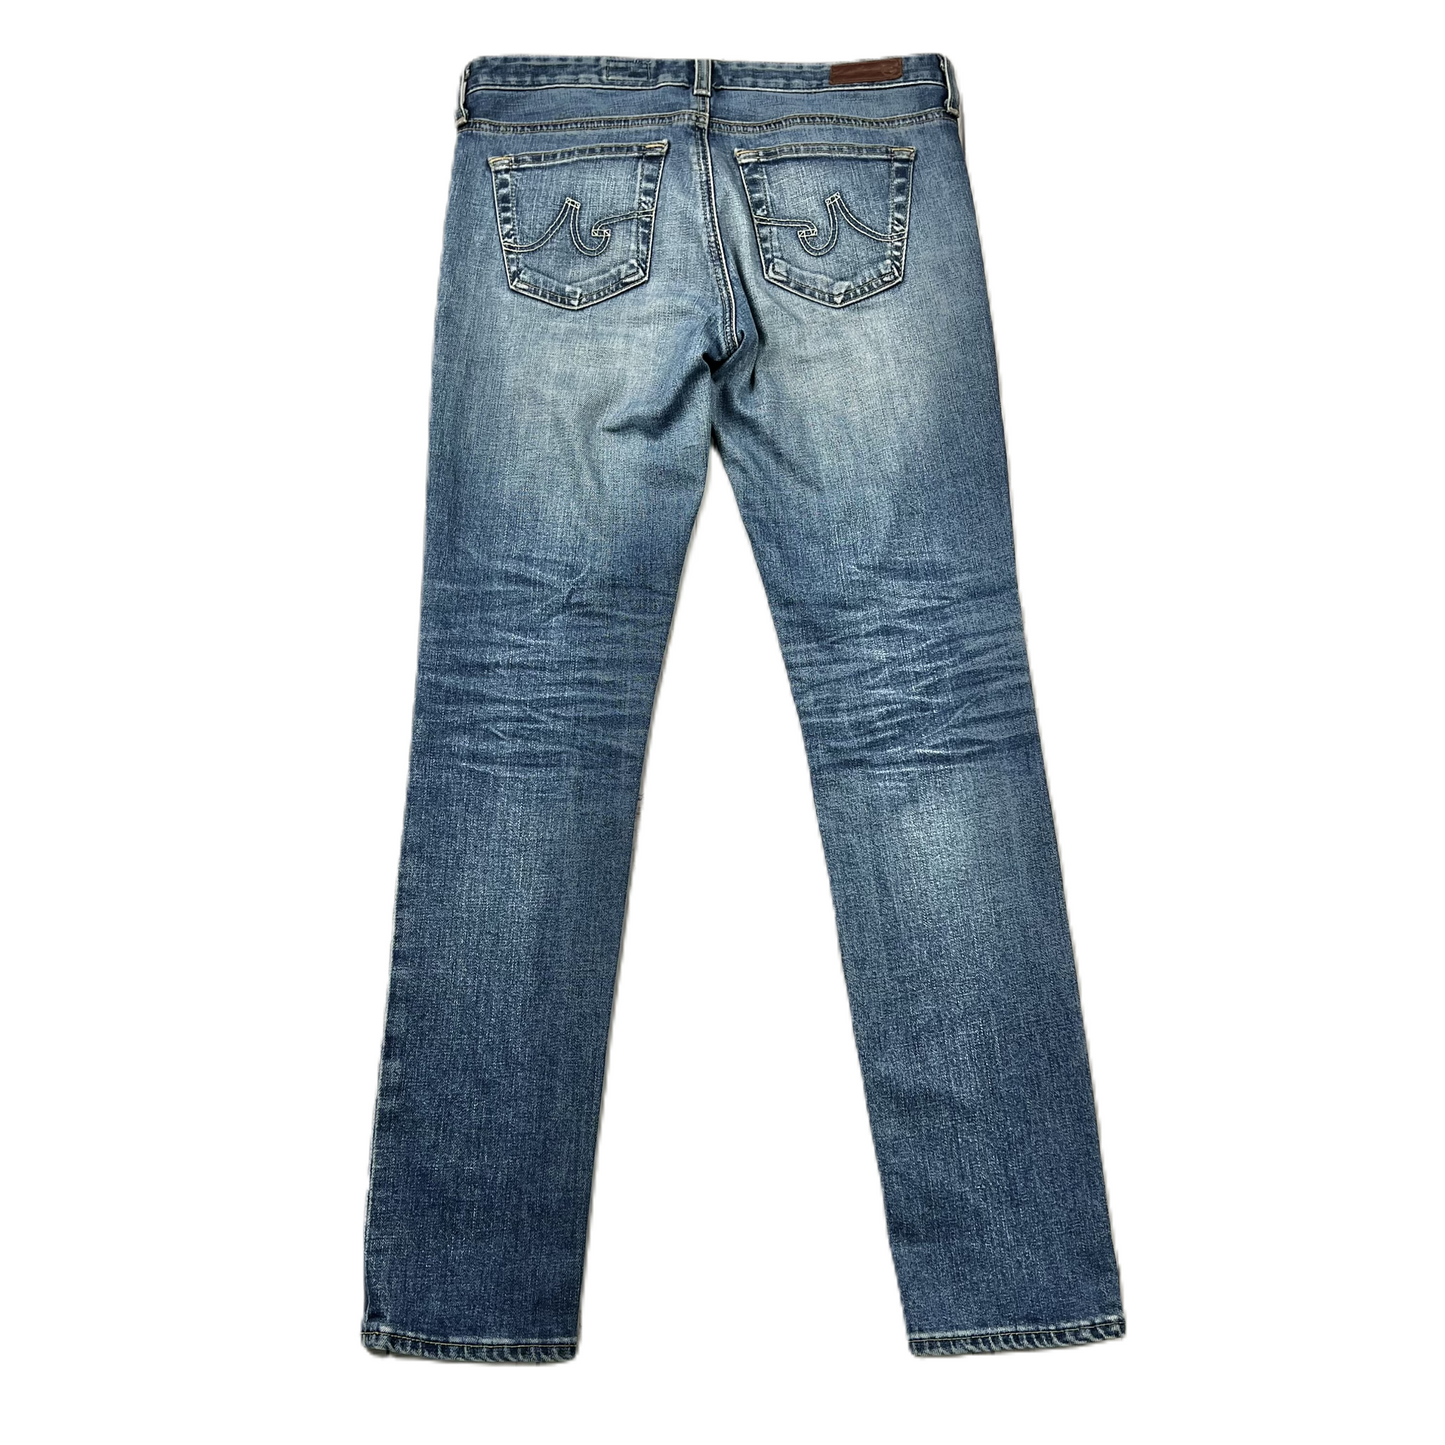 Blue Denim Jeans Skinny By Adriano Goldschmied, Size: 4